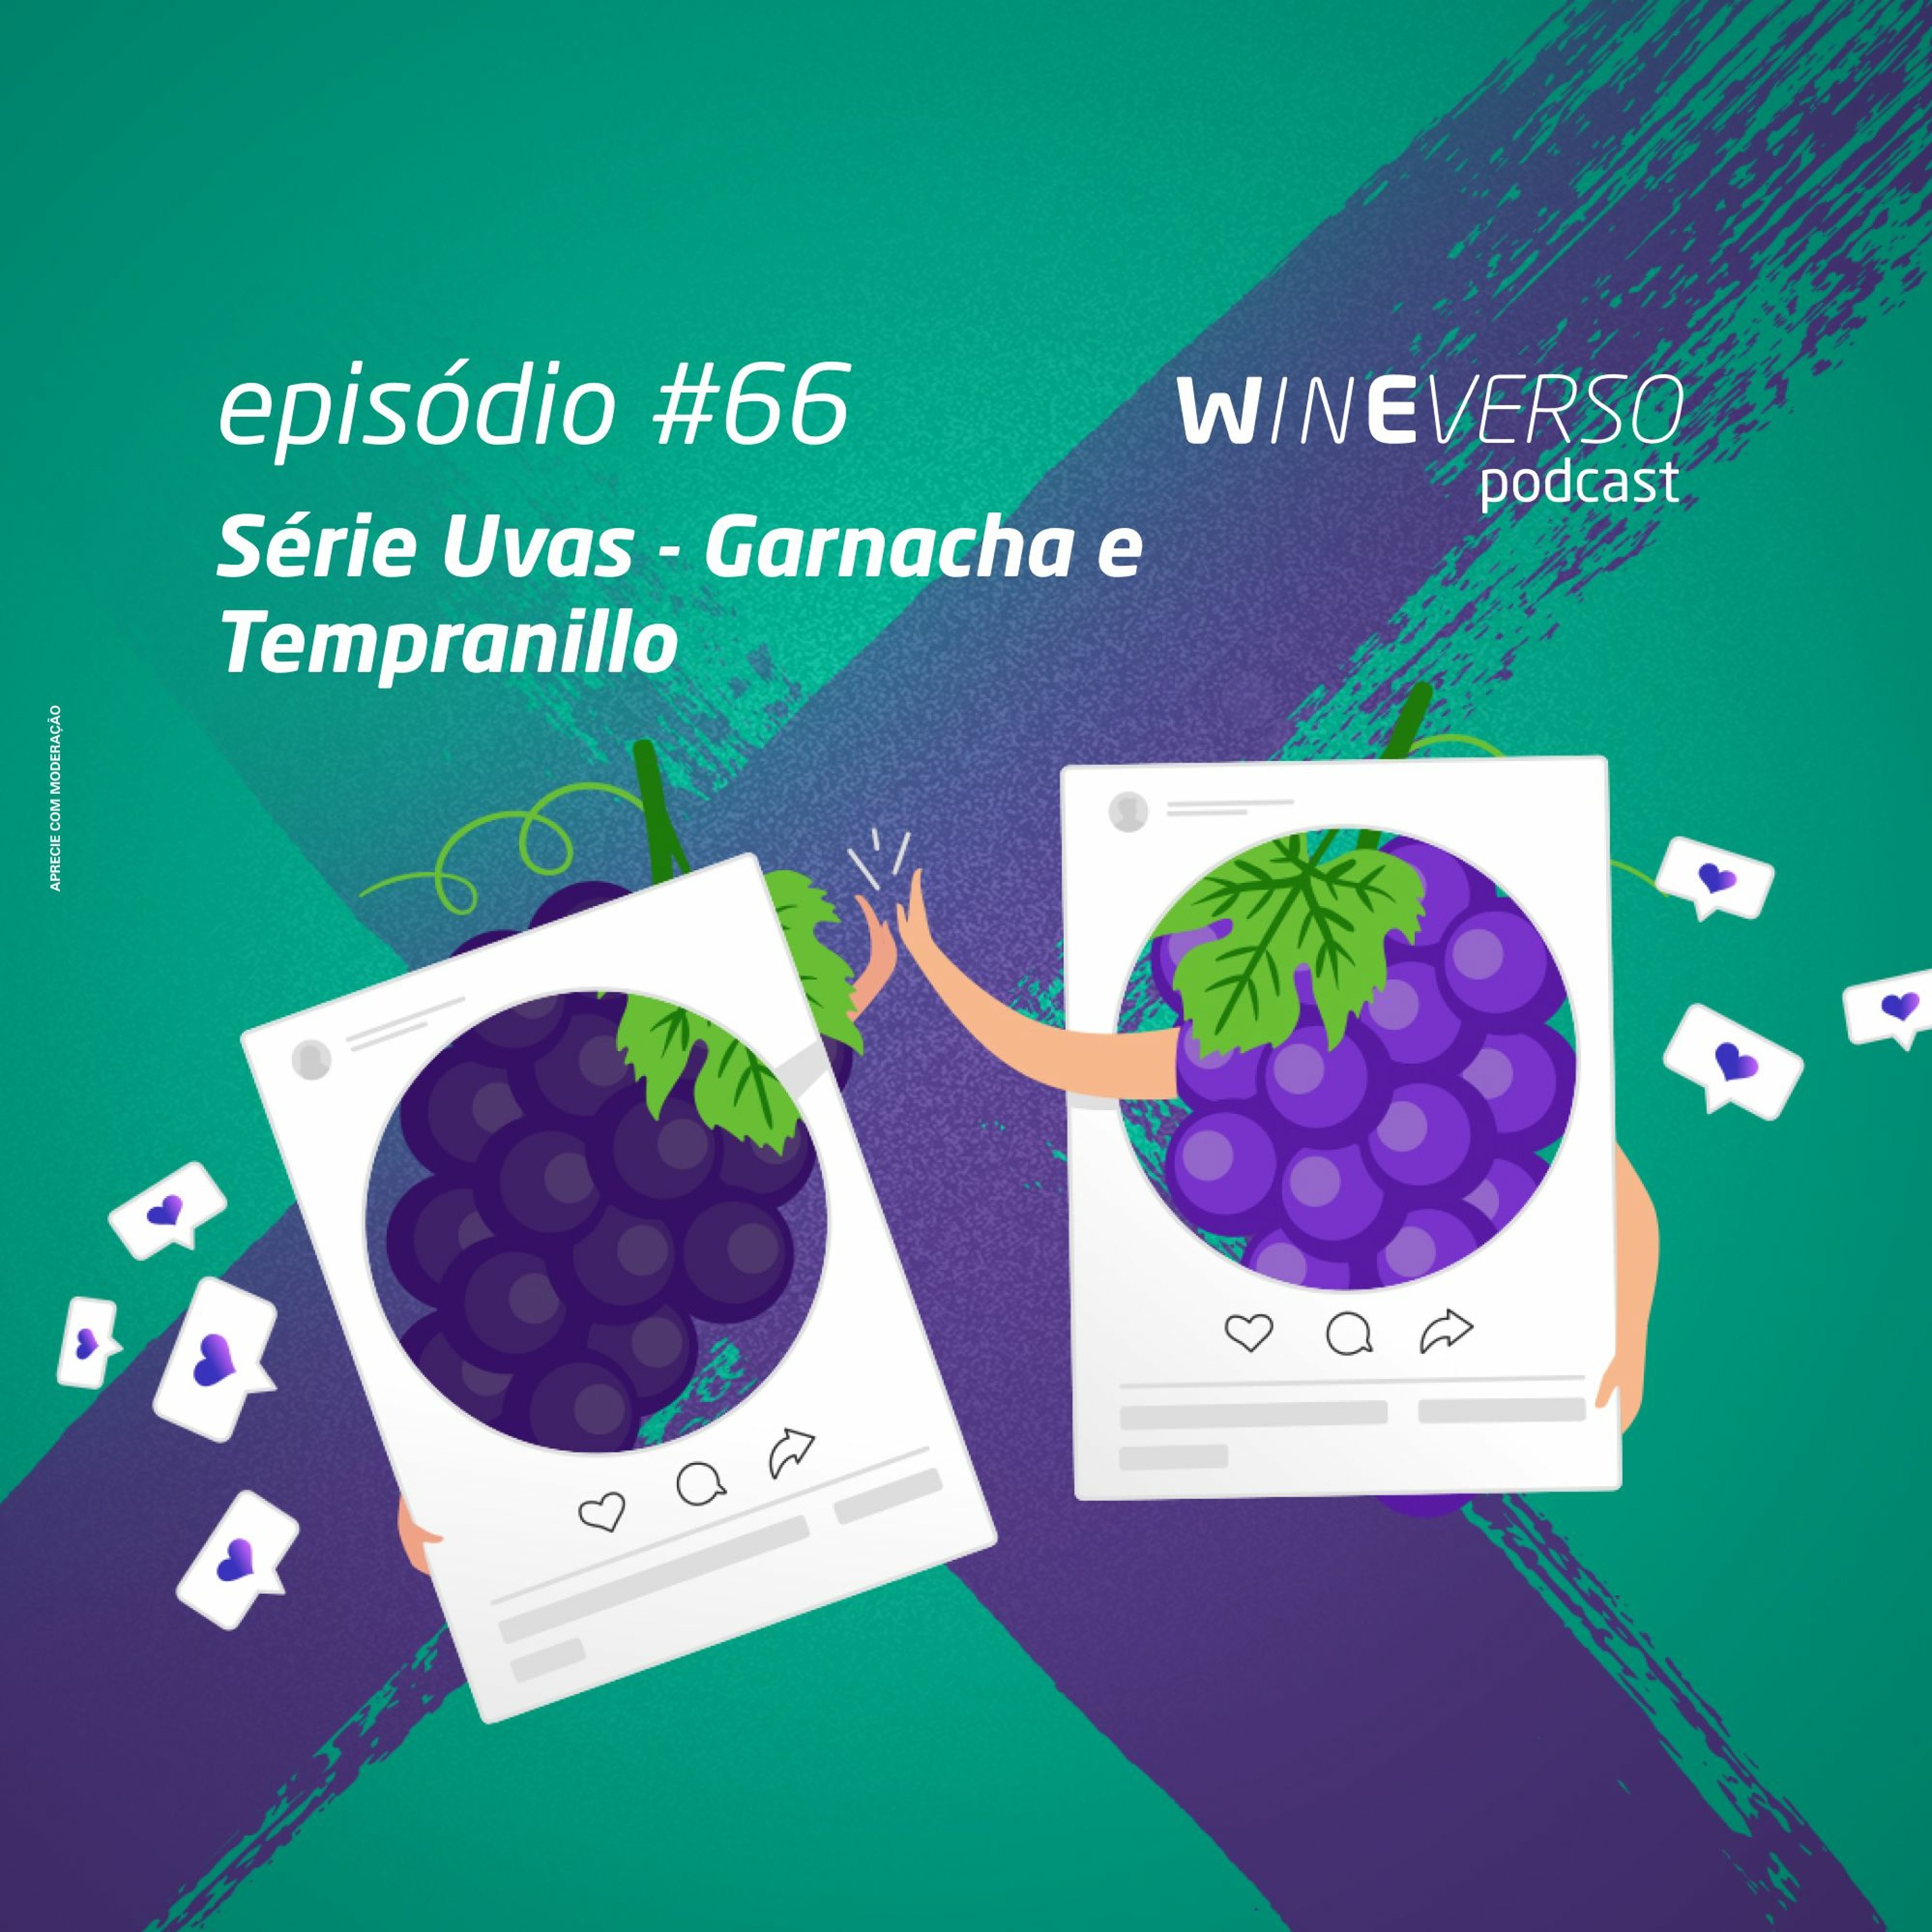 Série uvas - Garnacha e Tempranillo